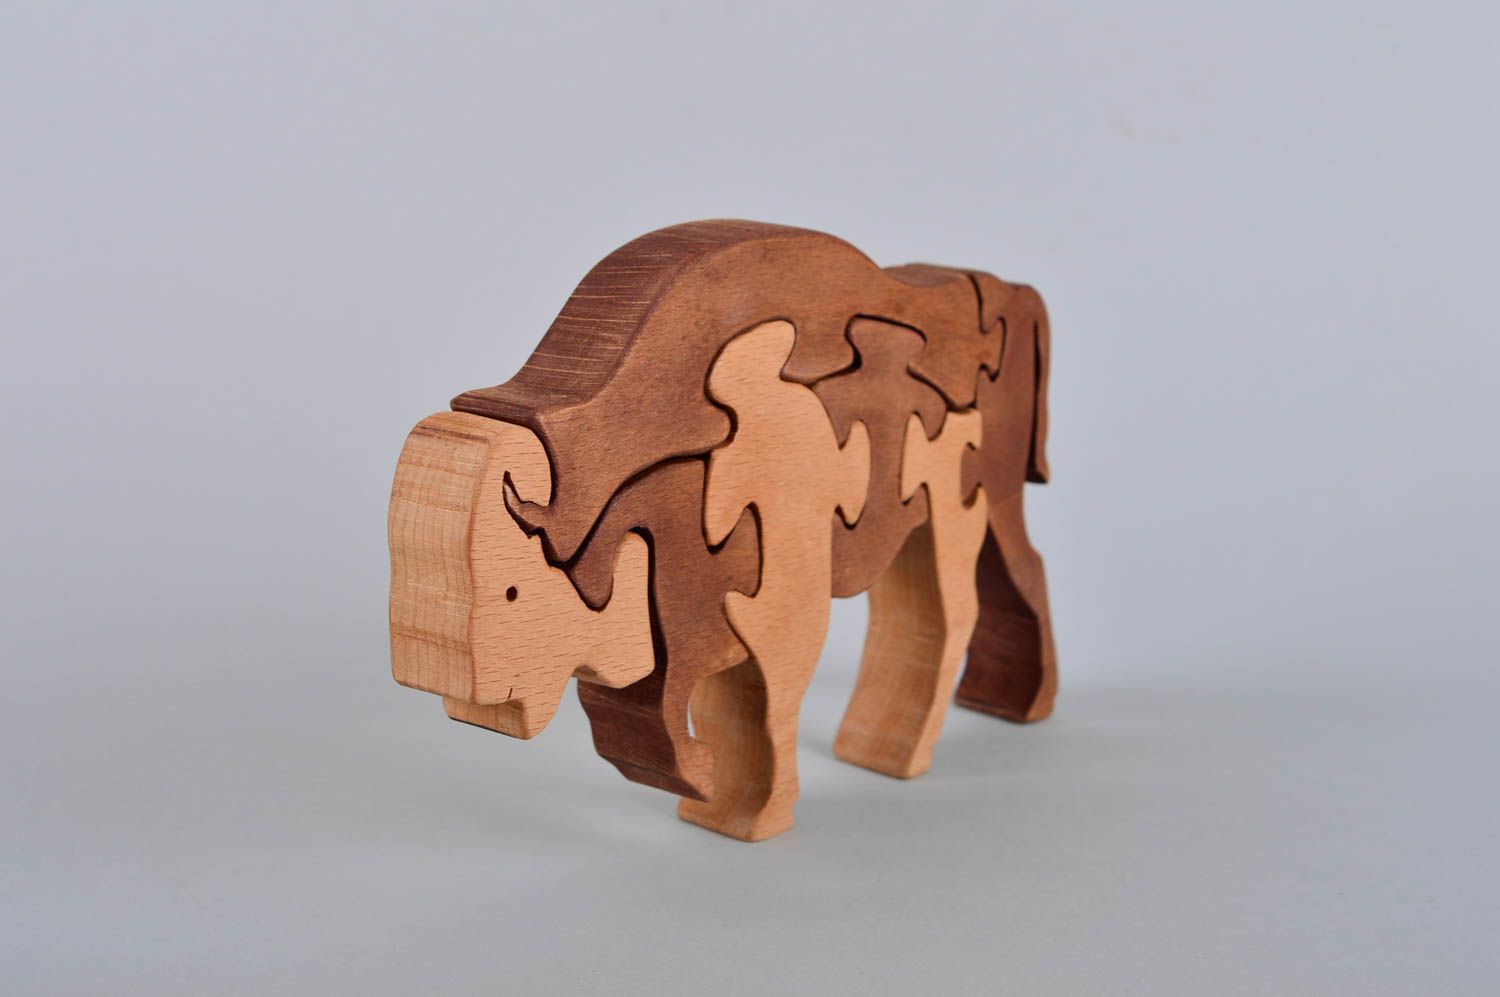  Развивающая игрушка ручной работы детская головоломка пазлы для детей бизон фото 3